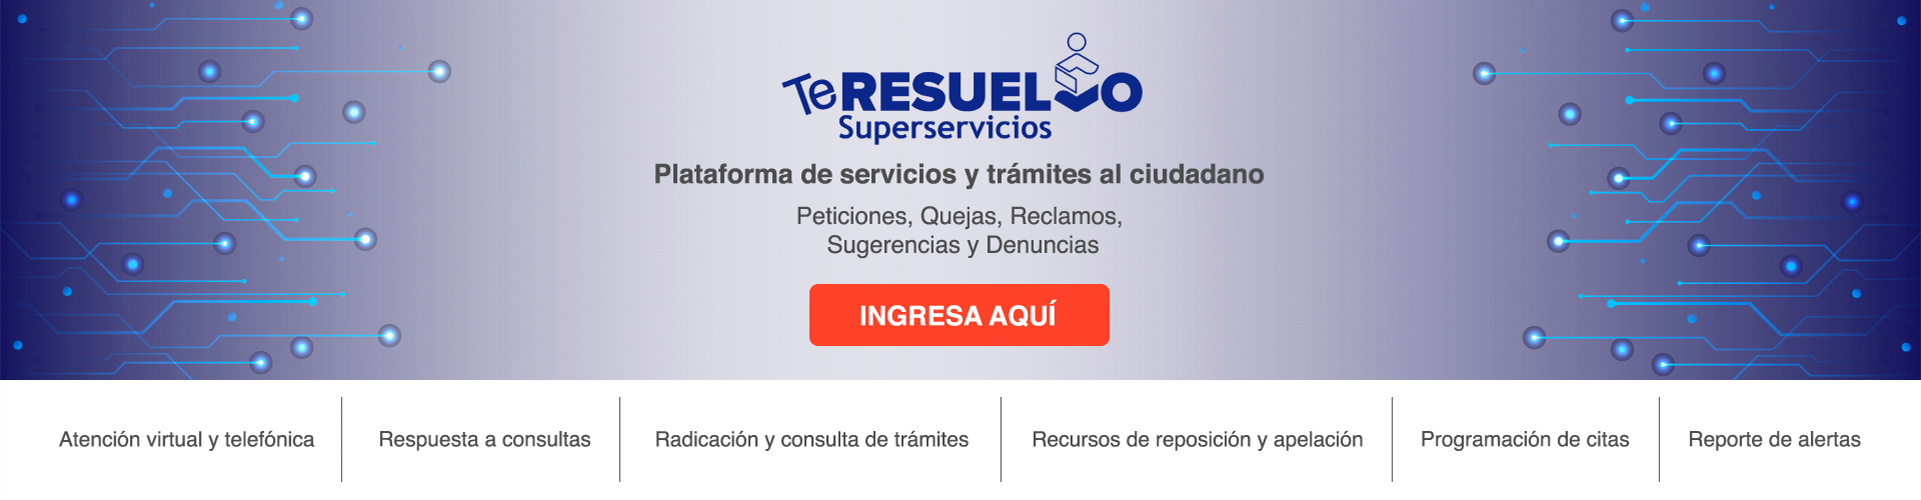 Imagen de acceso a la plataforma de trámites y servicios TeResuelvo